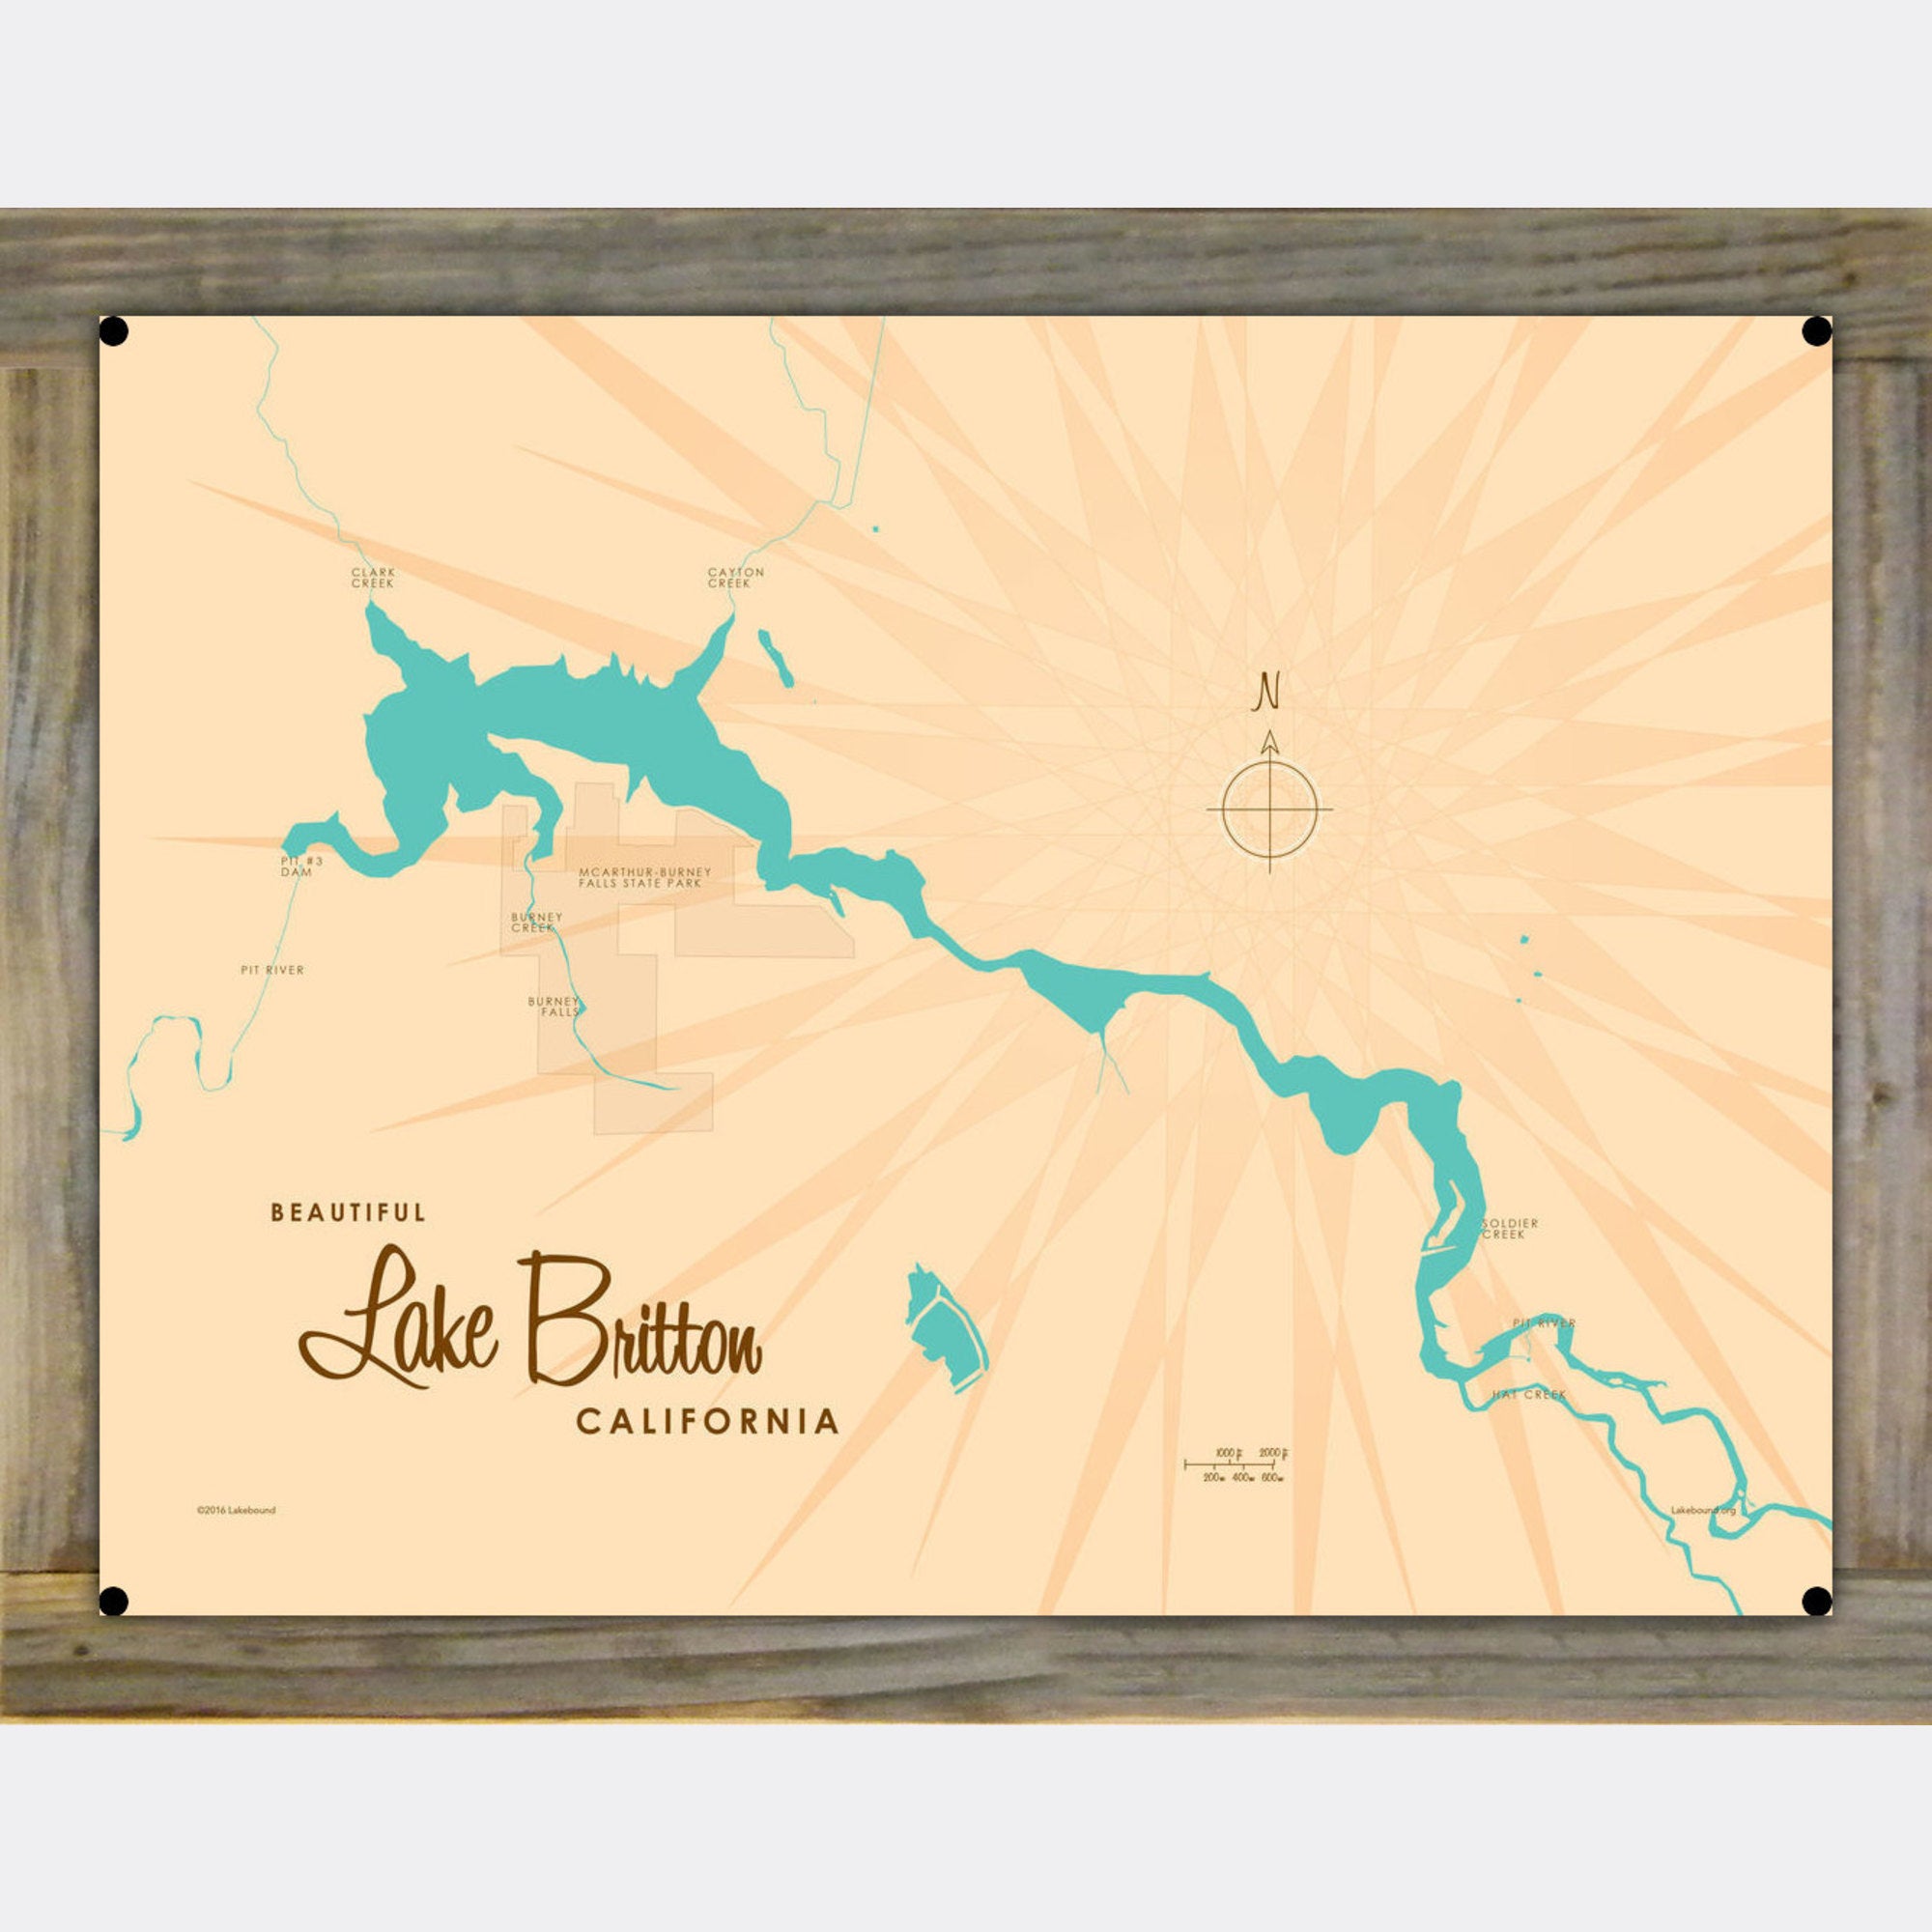 Lake Britton California, Wood-Mounted Metal Sign Map Art